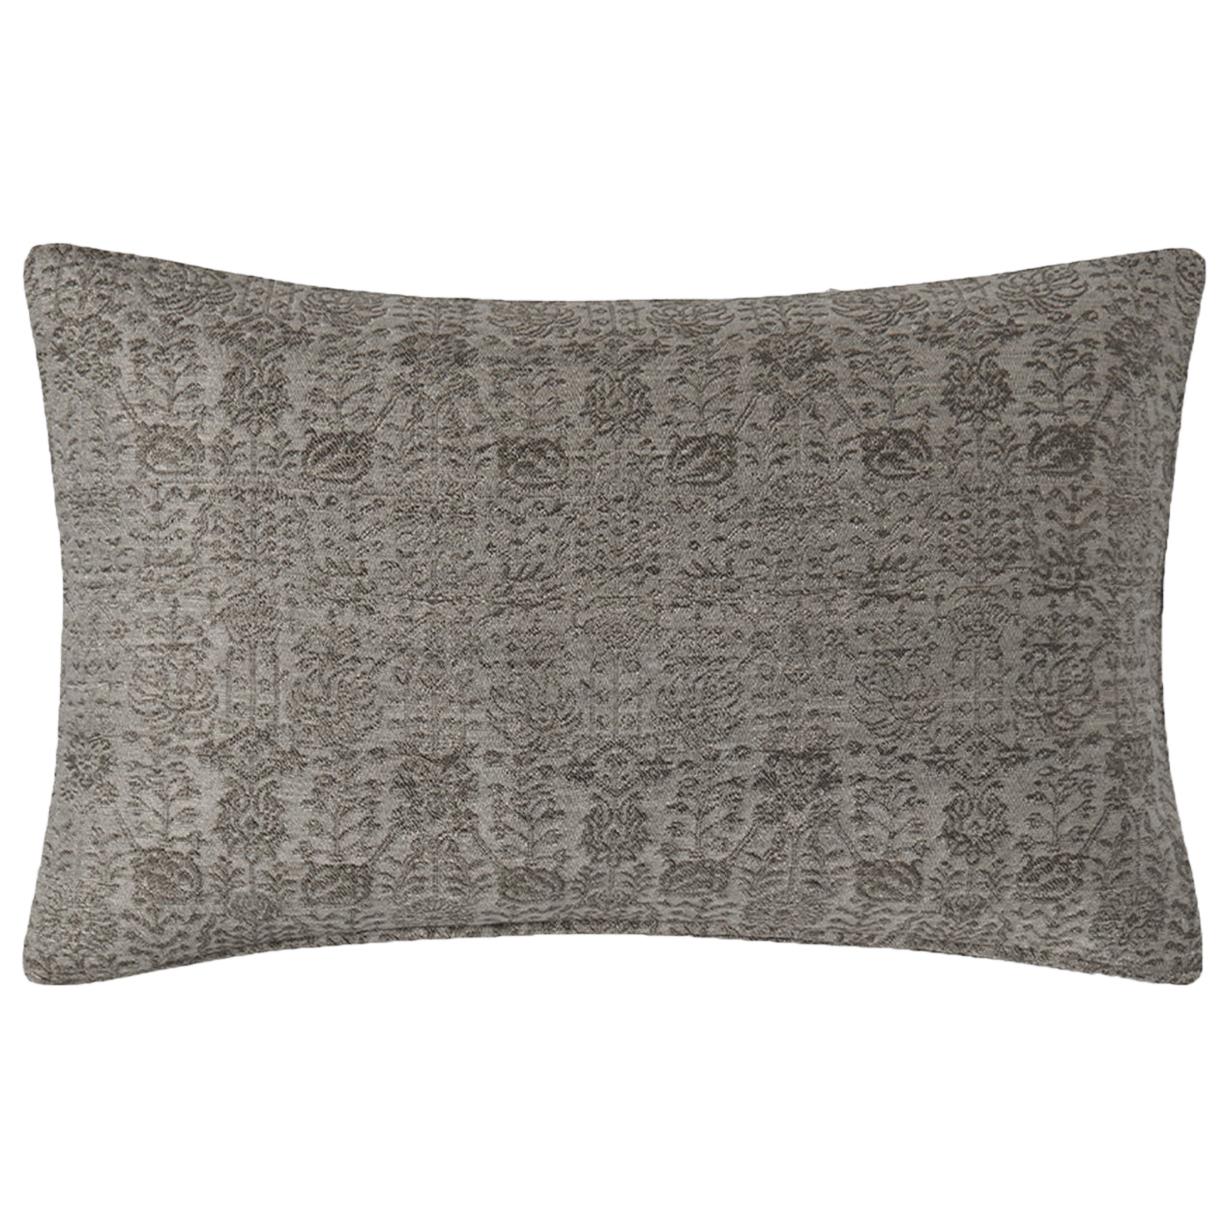 Ben Soleimani Abra Pillow Cover - Graphite 16"x24" For Sale